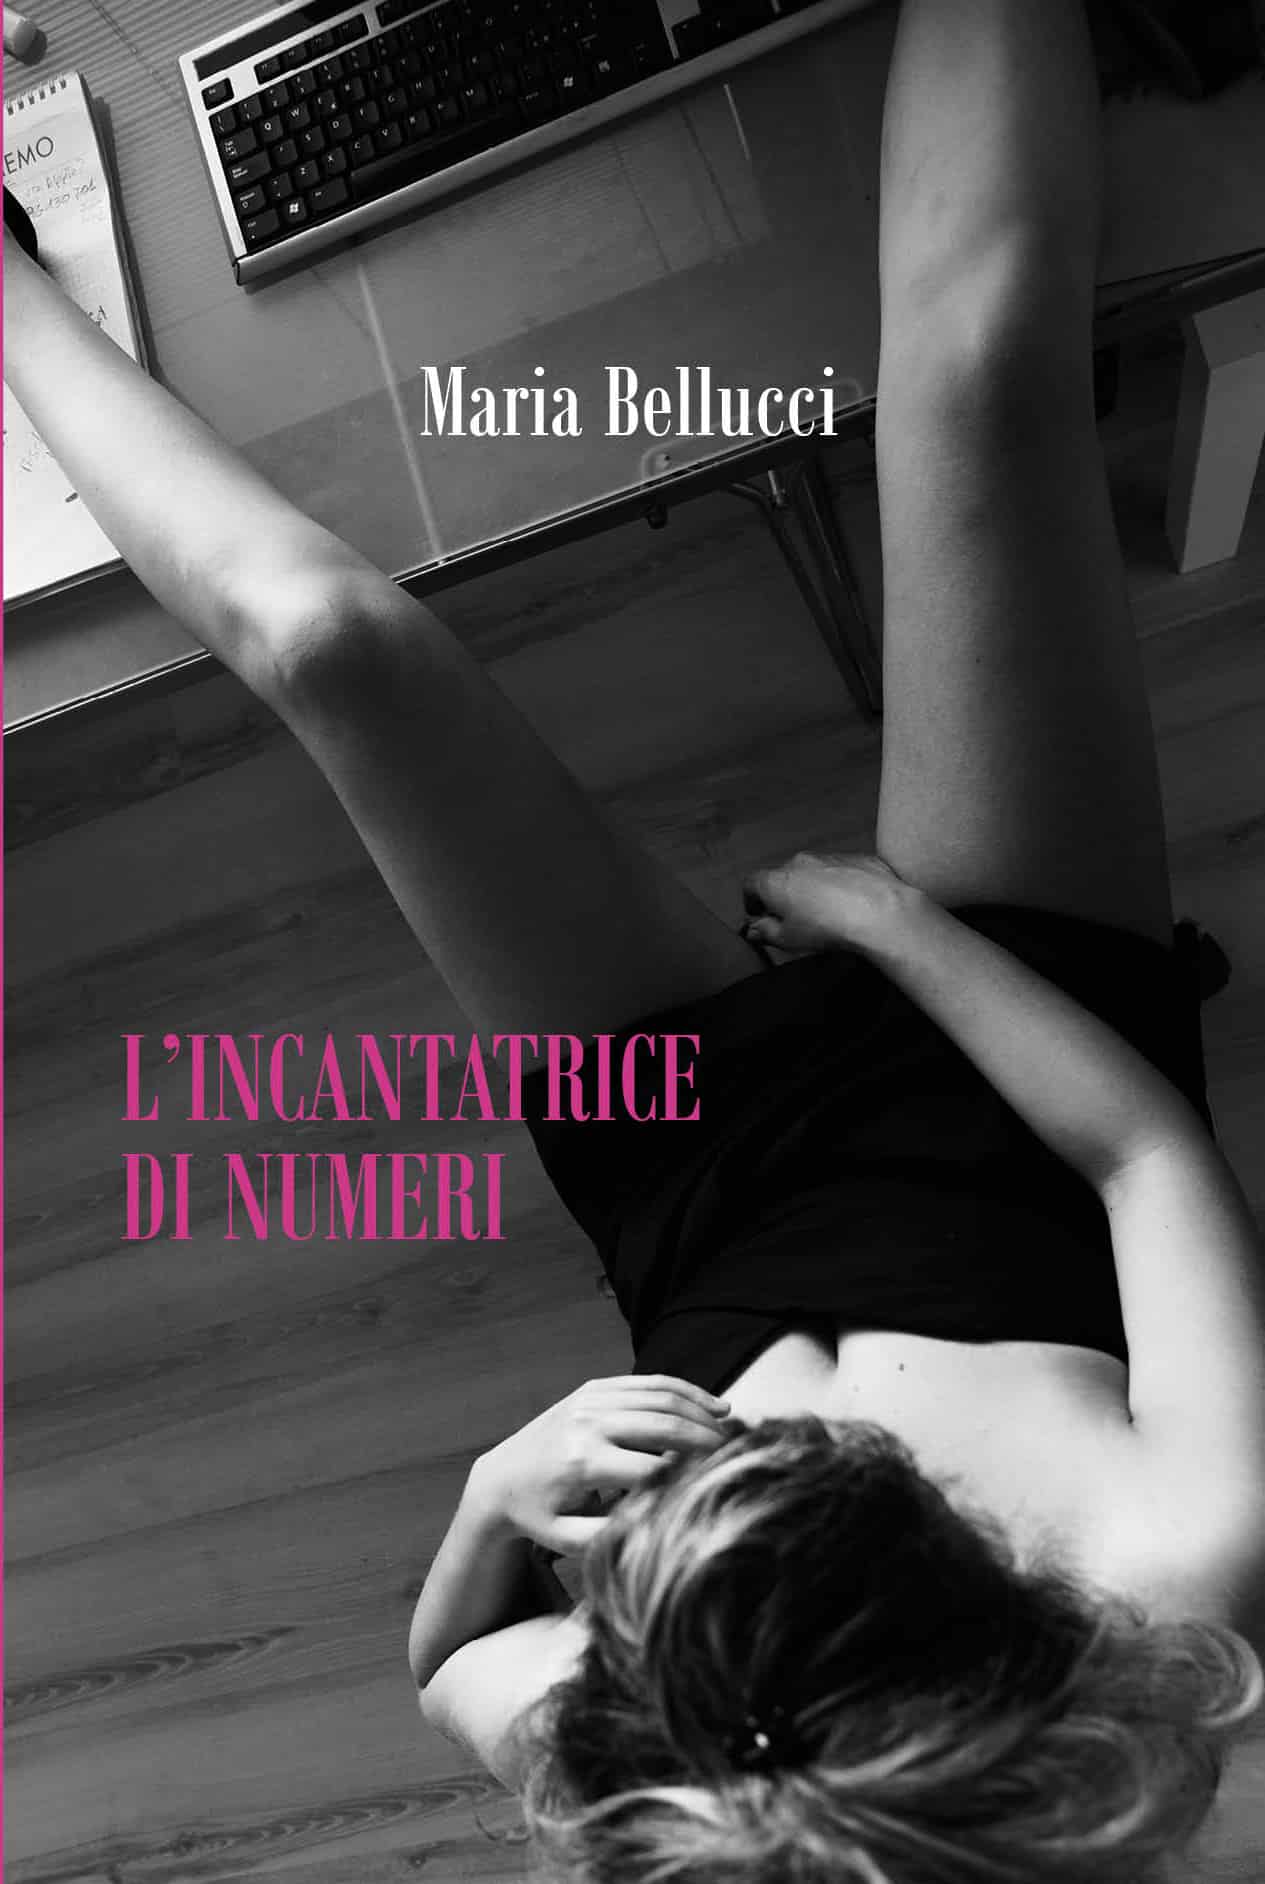 La cover del libro “L'Incantatrice di numeri” 